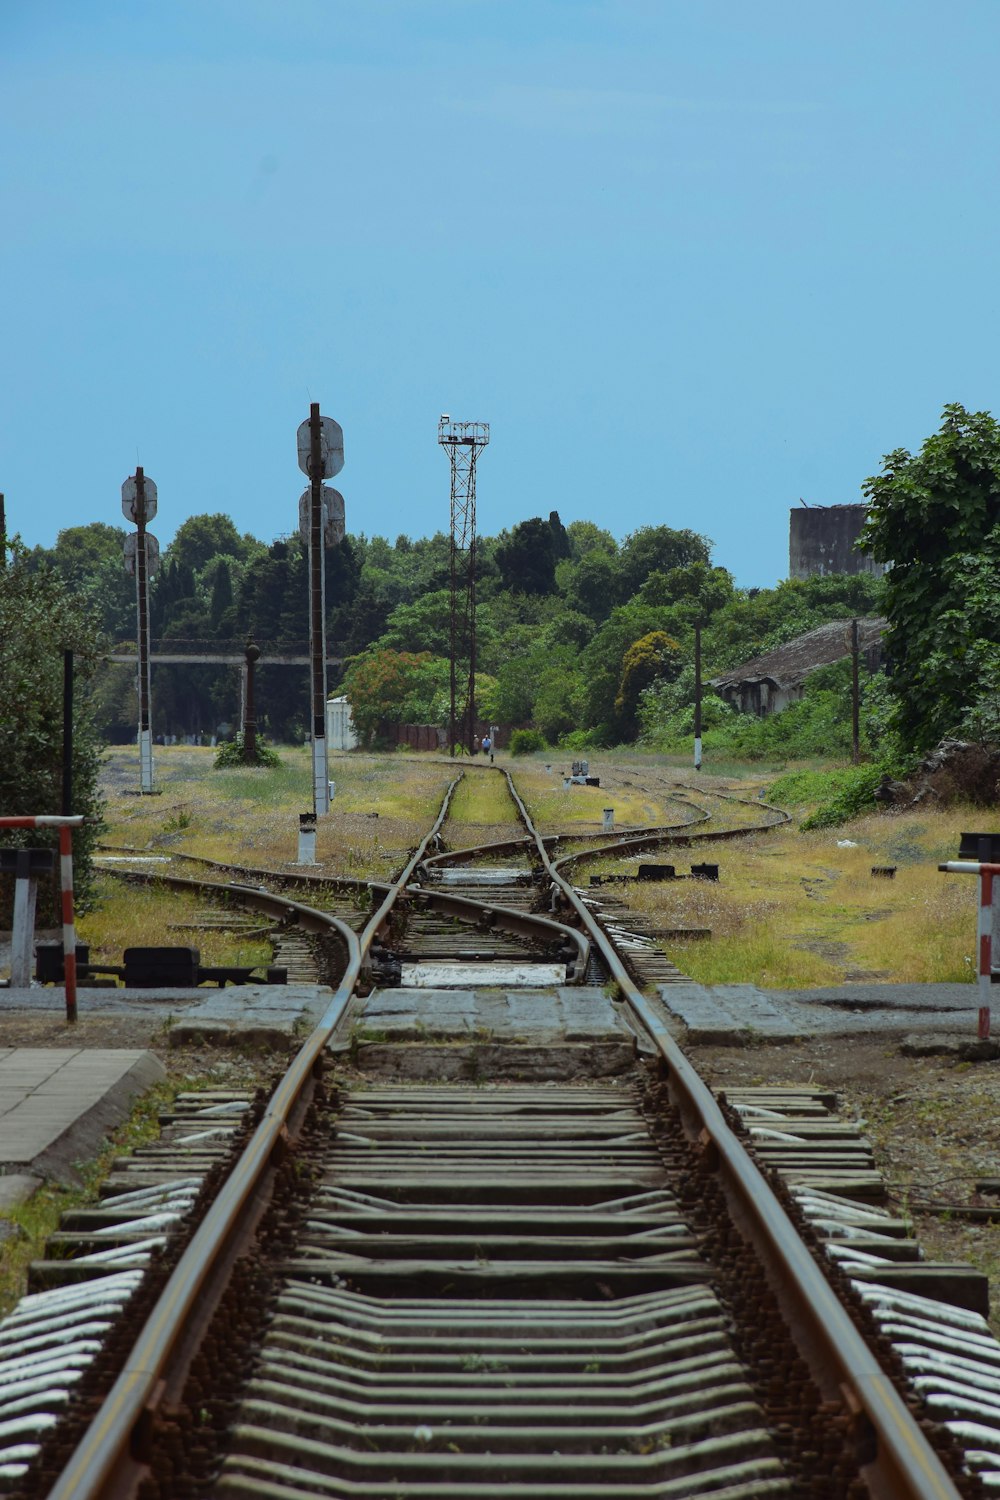 une vue d’une voie ferrée depuis l’extrémité de la voie